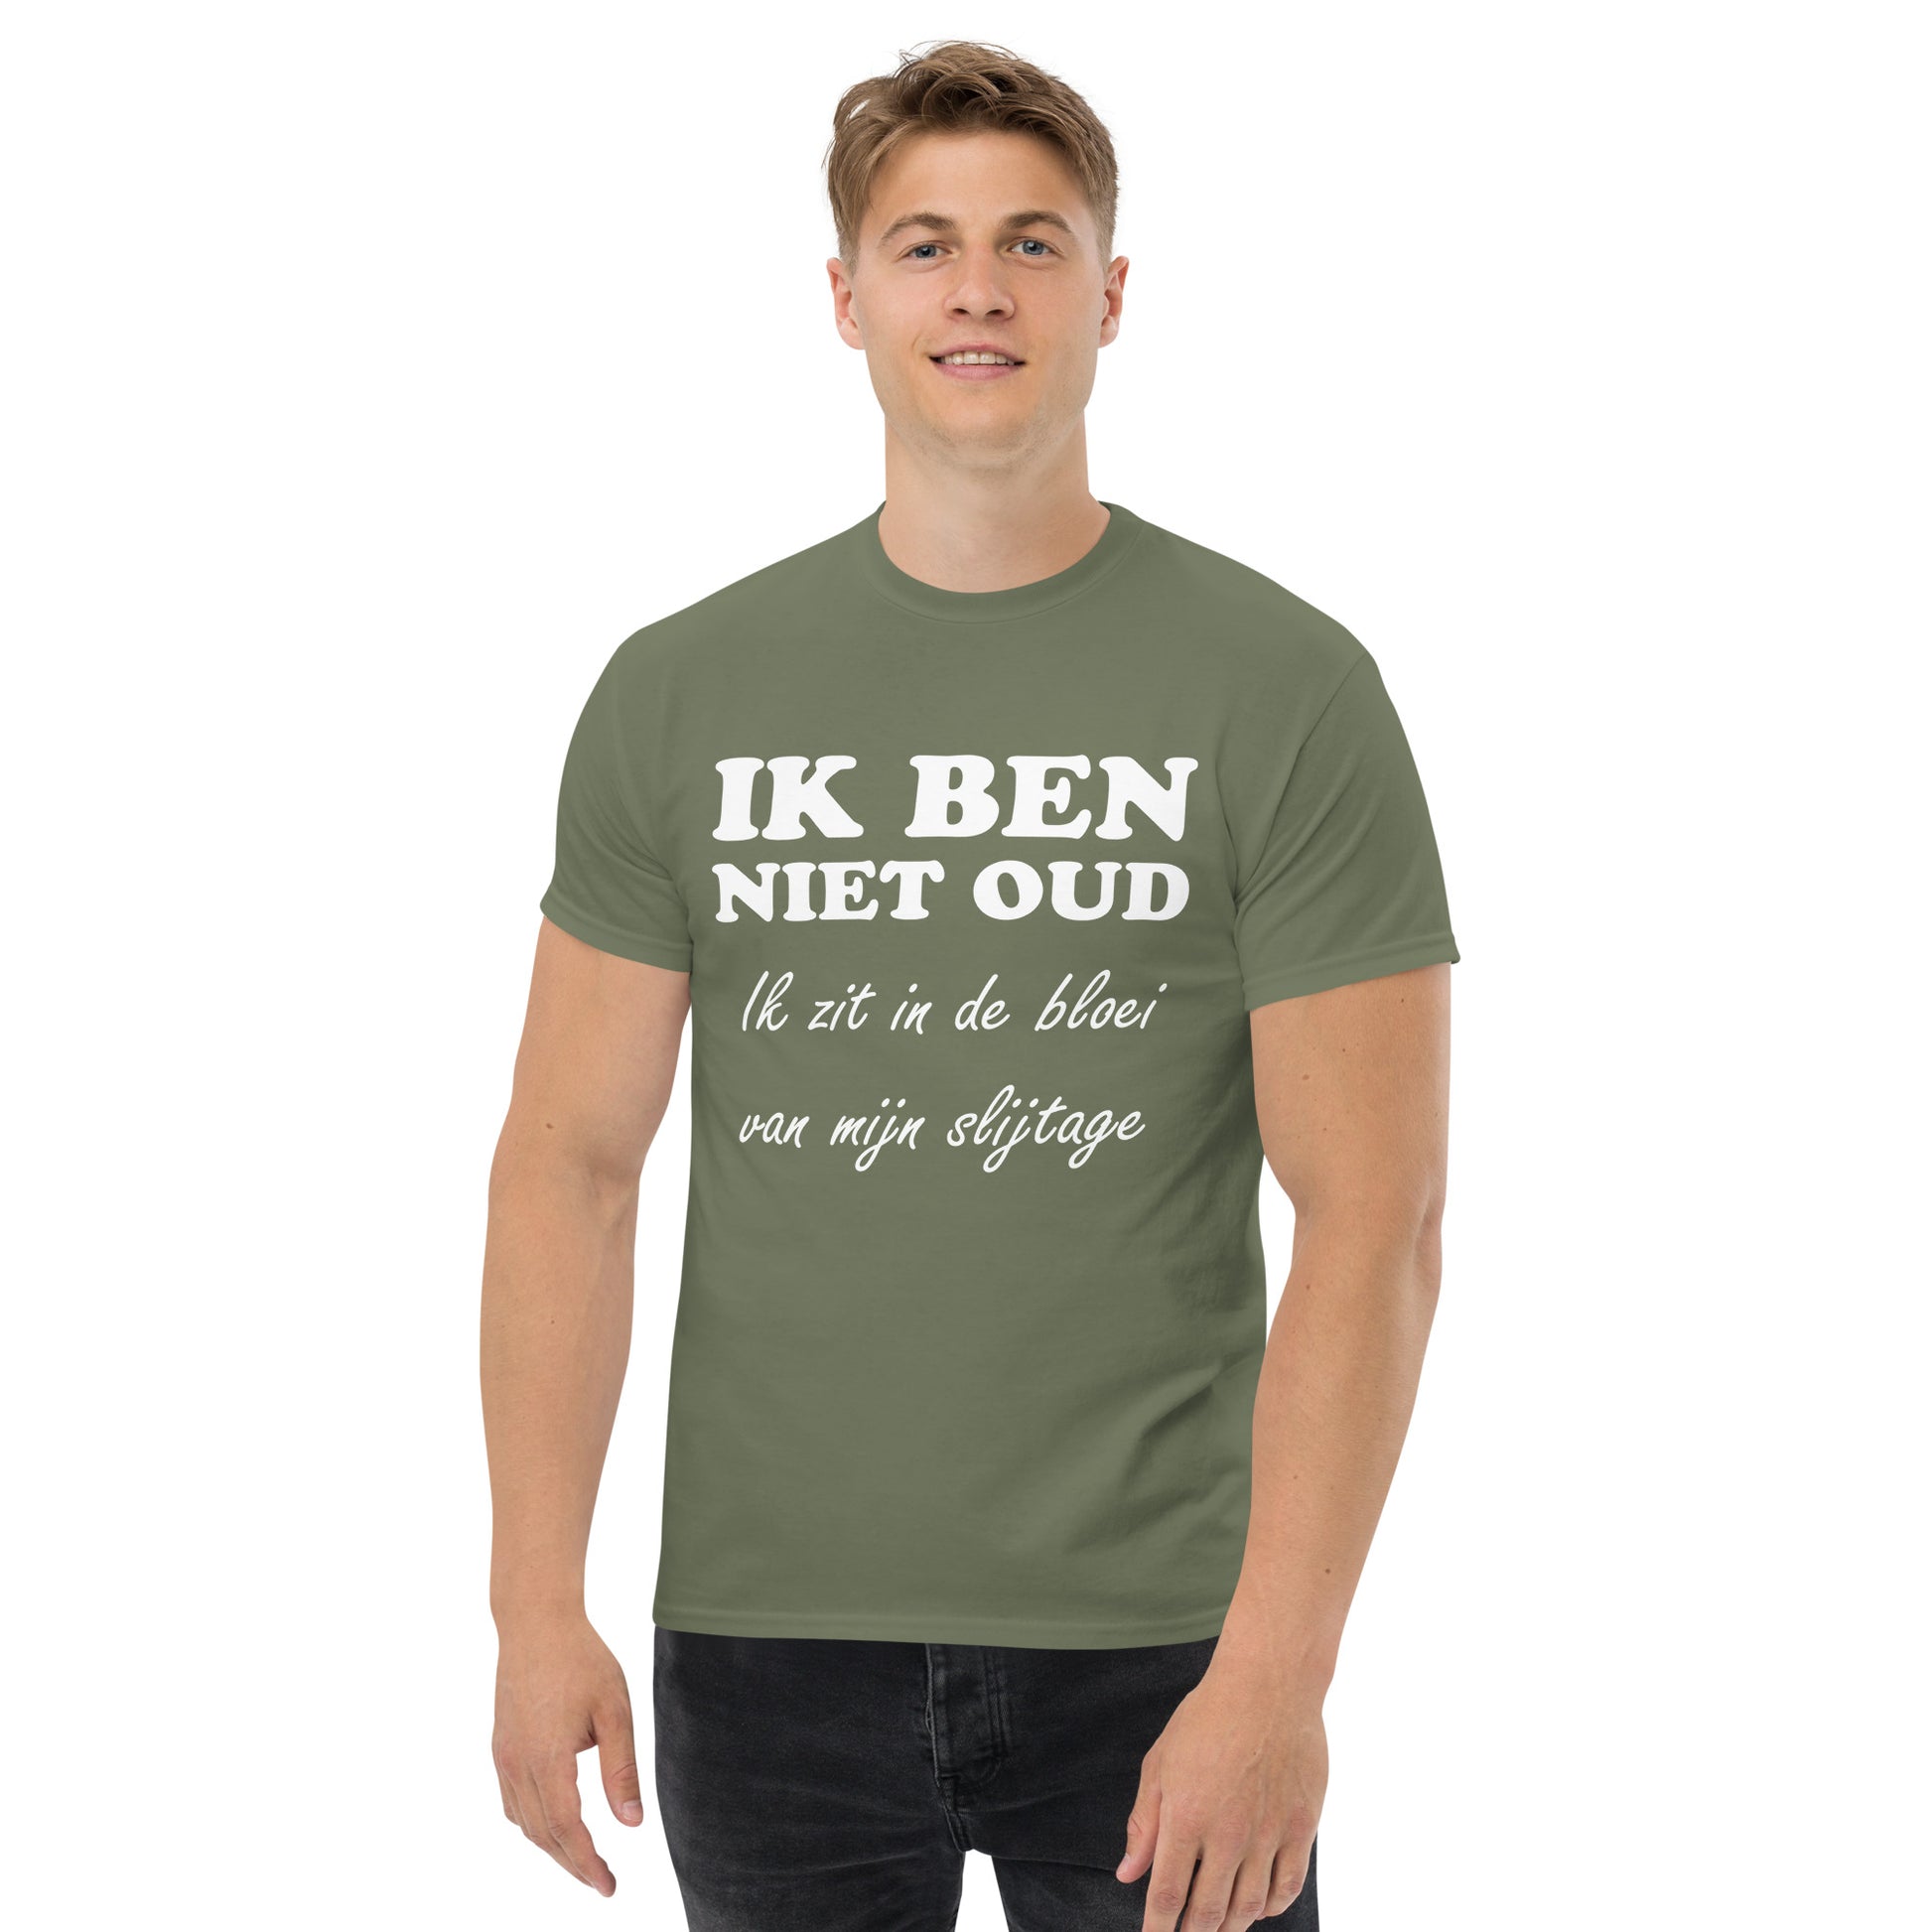 Men with Military green T-shirt with the text in white "IK BEN NIET OUD ik zit in de bloei van mijn slijtage"